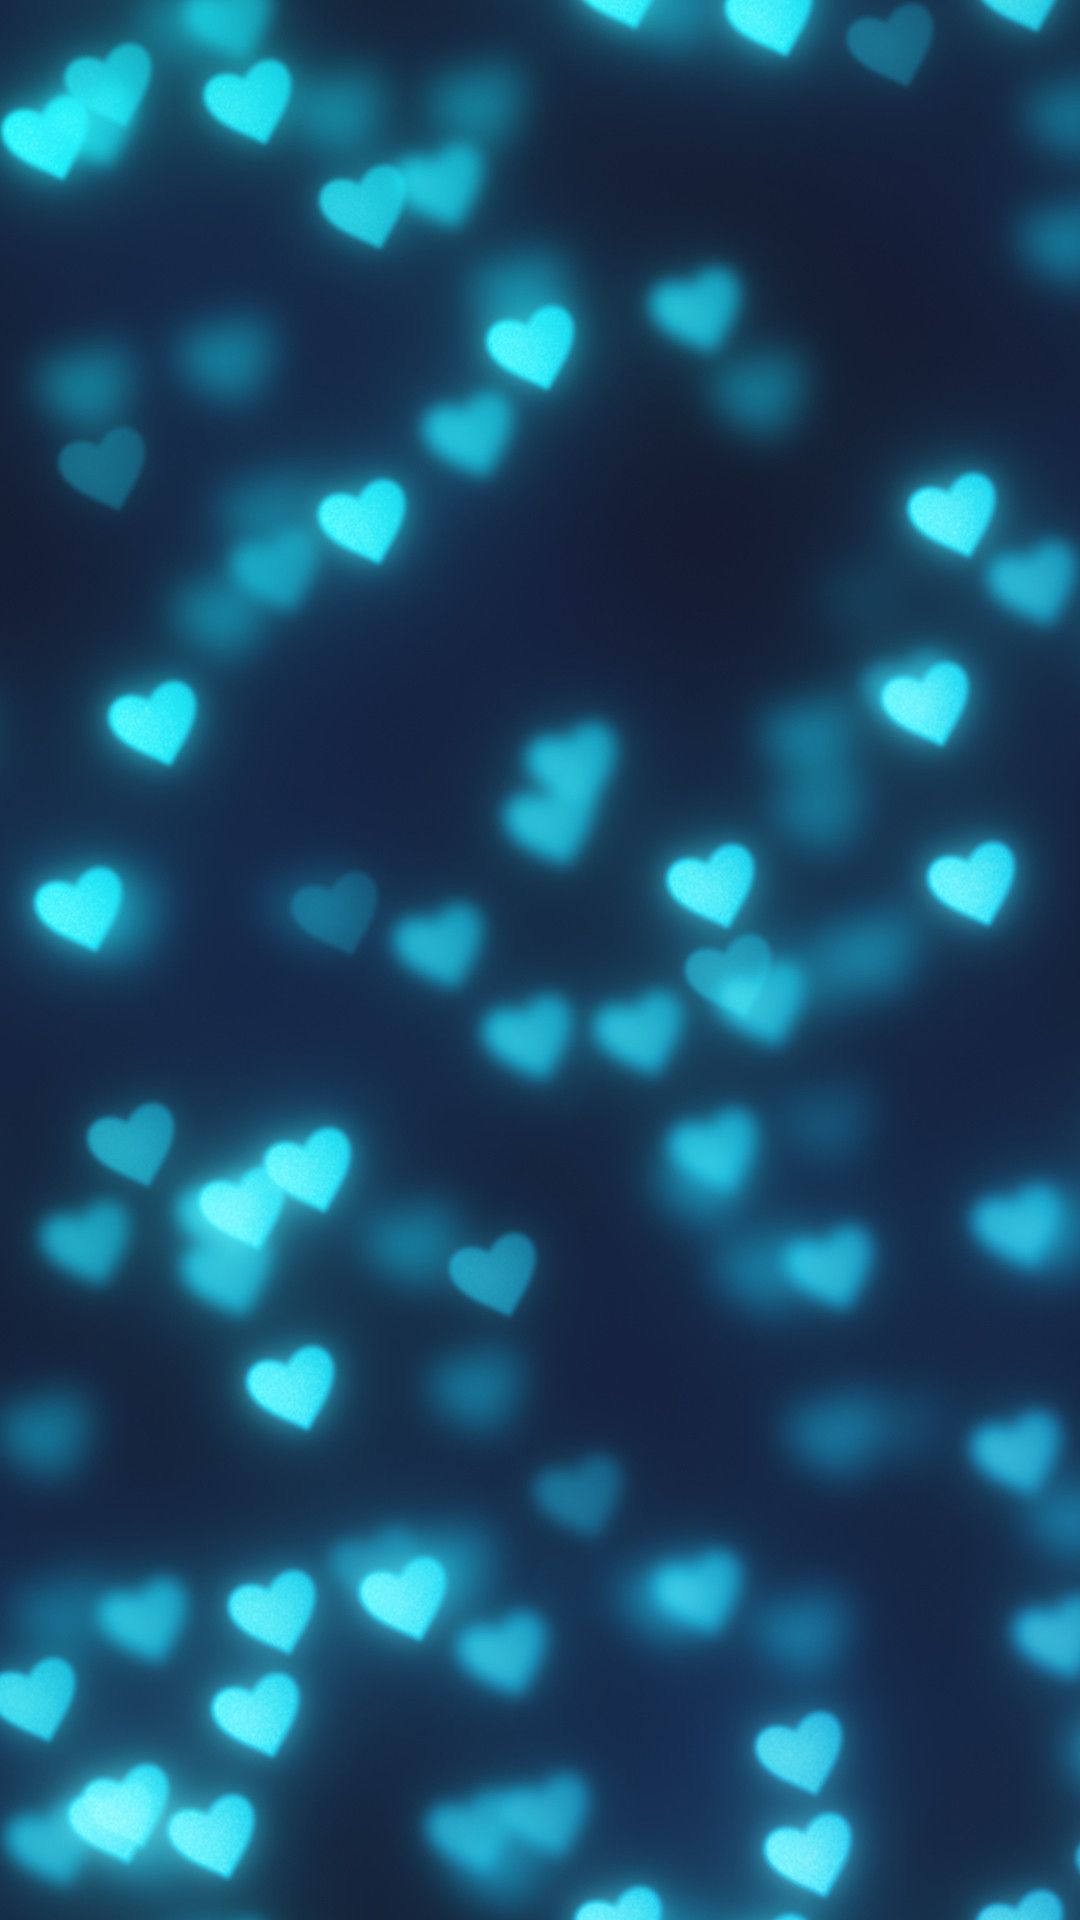 Hình nền trái tim xanh sẽ khiến bạn lưu ý đến niềm tin và hy vọng trong tình yêu. Bức tranh sắc màu này chứa đựng tình cảm và rất thích hợp cho các cặp đôi hay những người yêu thích một phong cách lãng mạn và nổi bật. Hãy xem ngay hình ảnh để cảm nhận sức mạnh trái tim xanh.